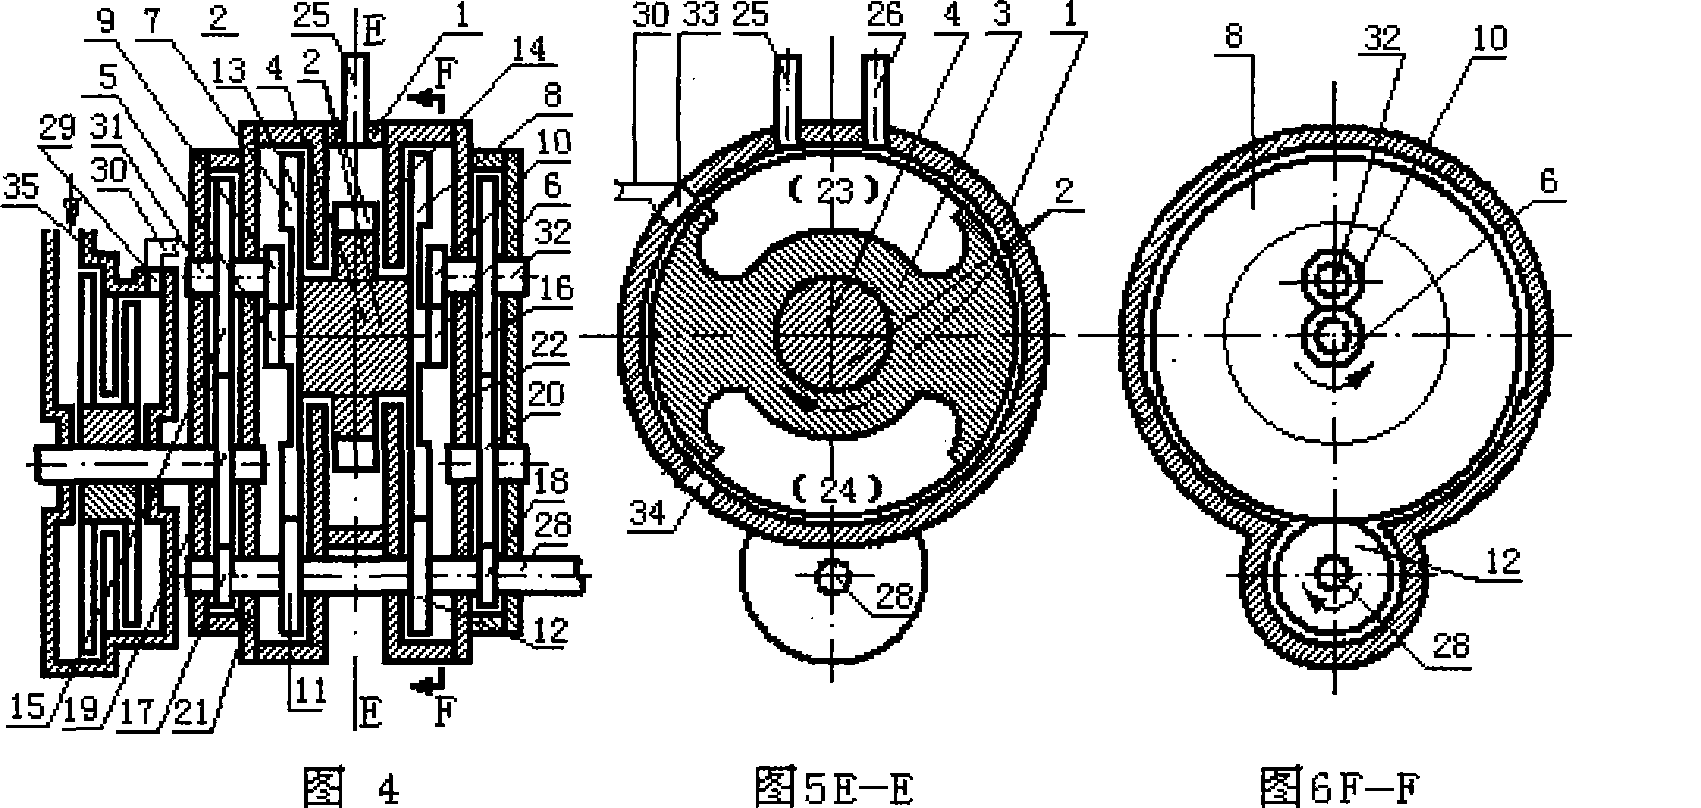 Constant volume type piston rotor engine